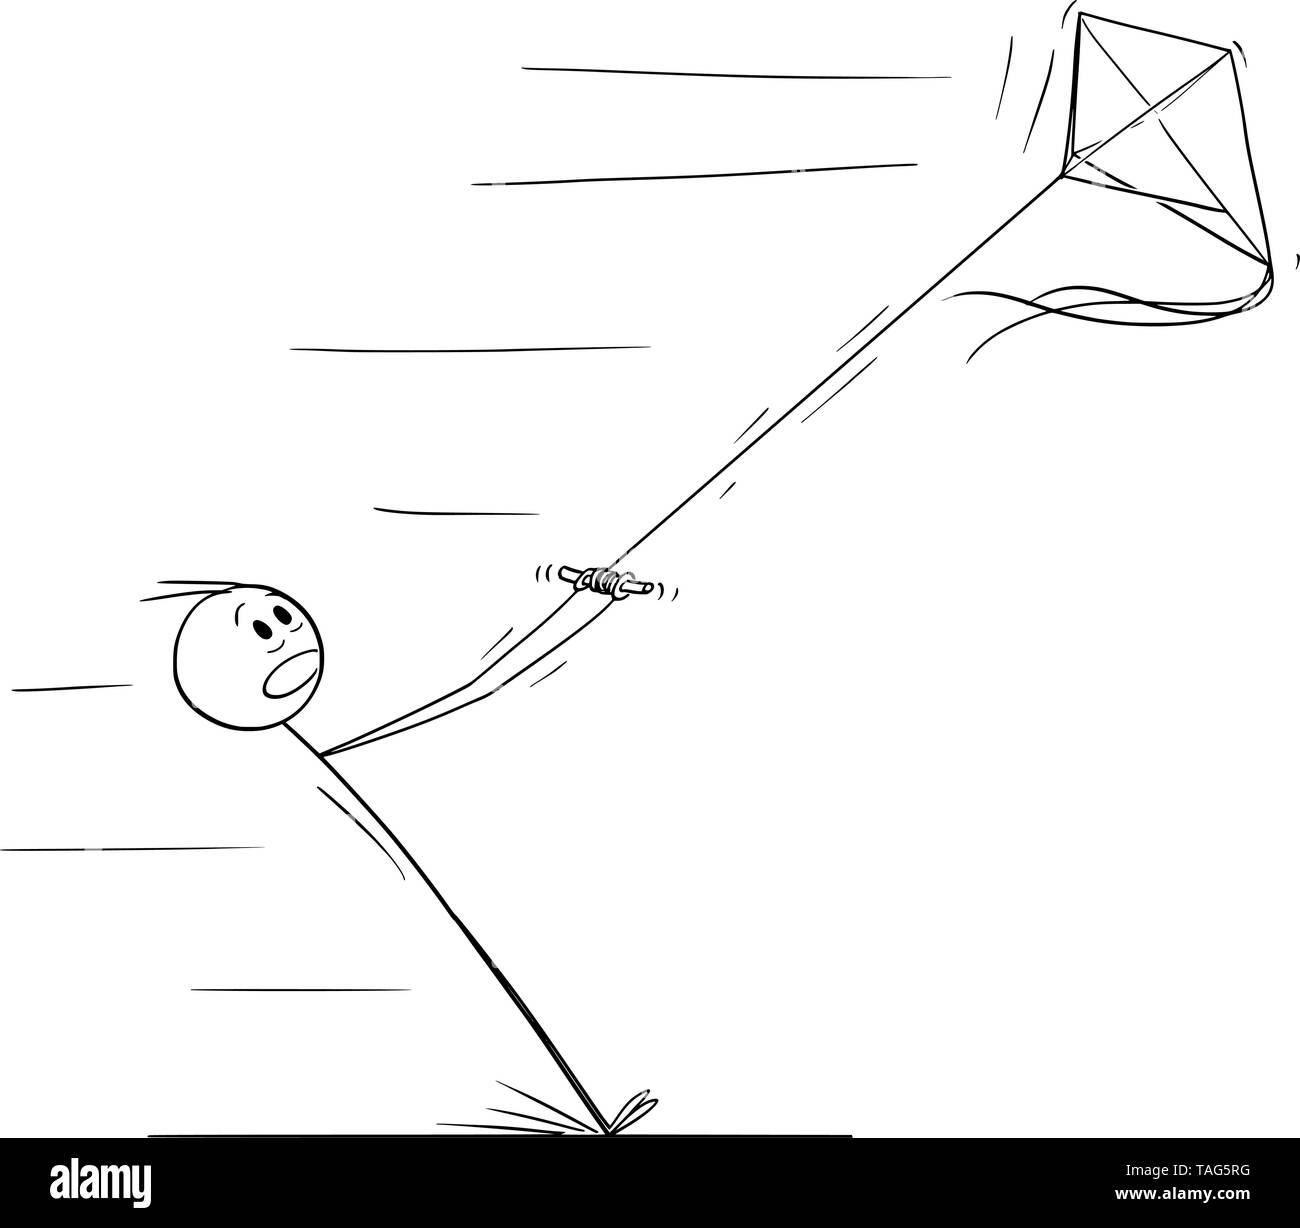 Vector cartoon stick figura disegno illustrazione concettuale dell'uomo aquilone volante e tirato in allontanamento del vento forte. Illustrazione Vettoriale